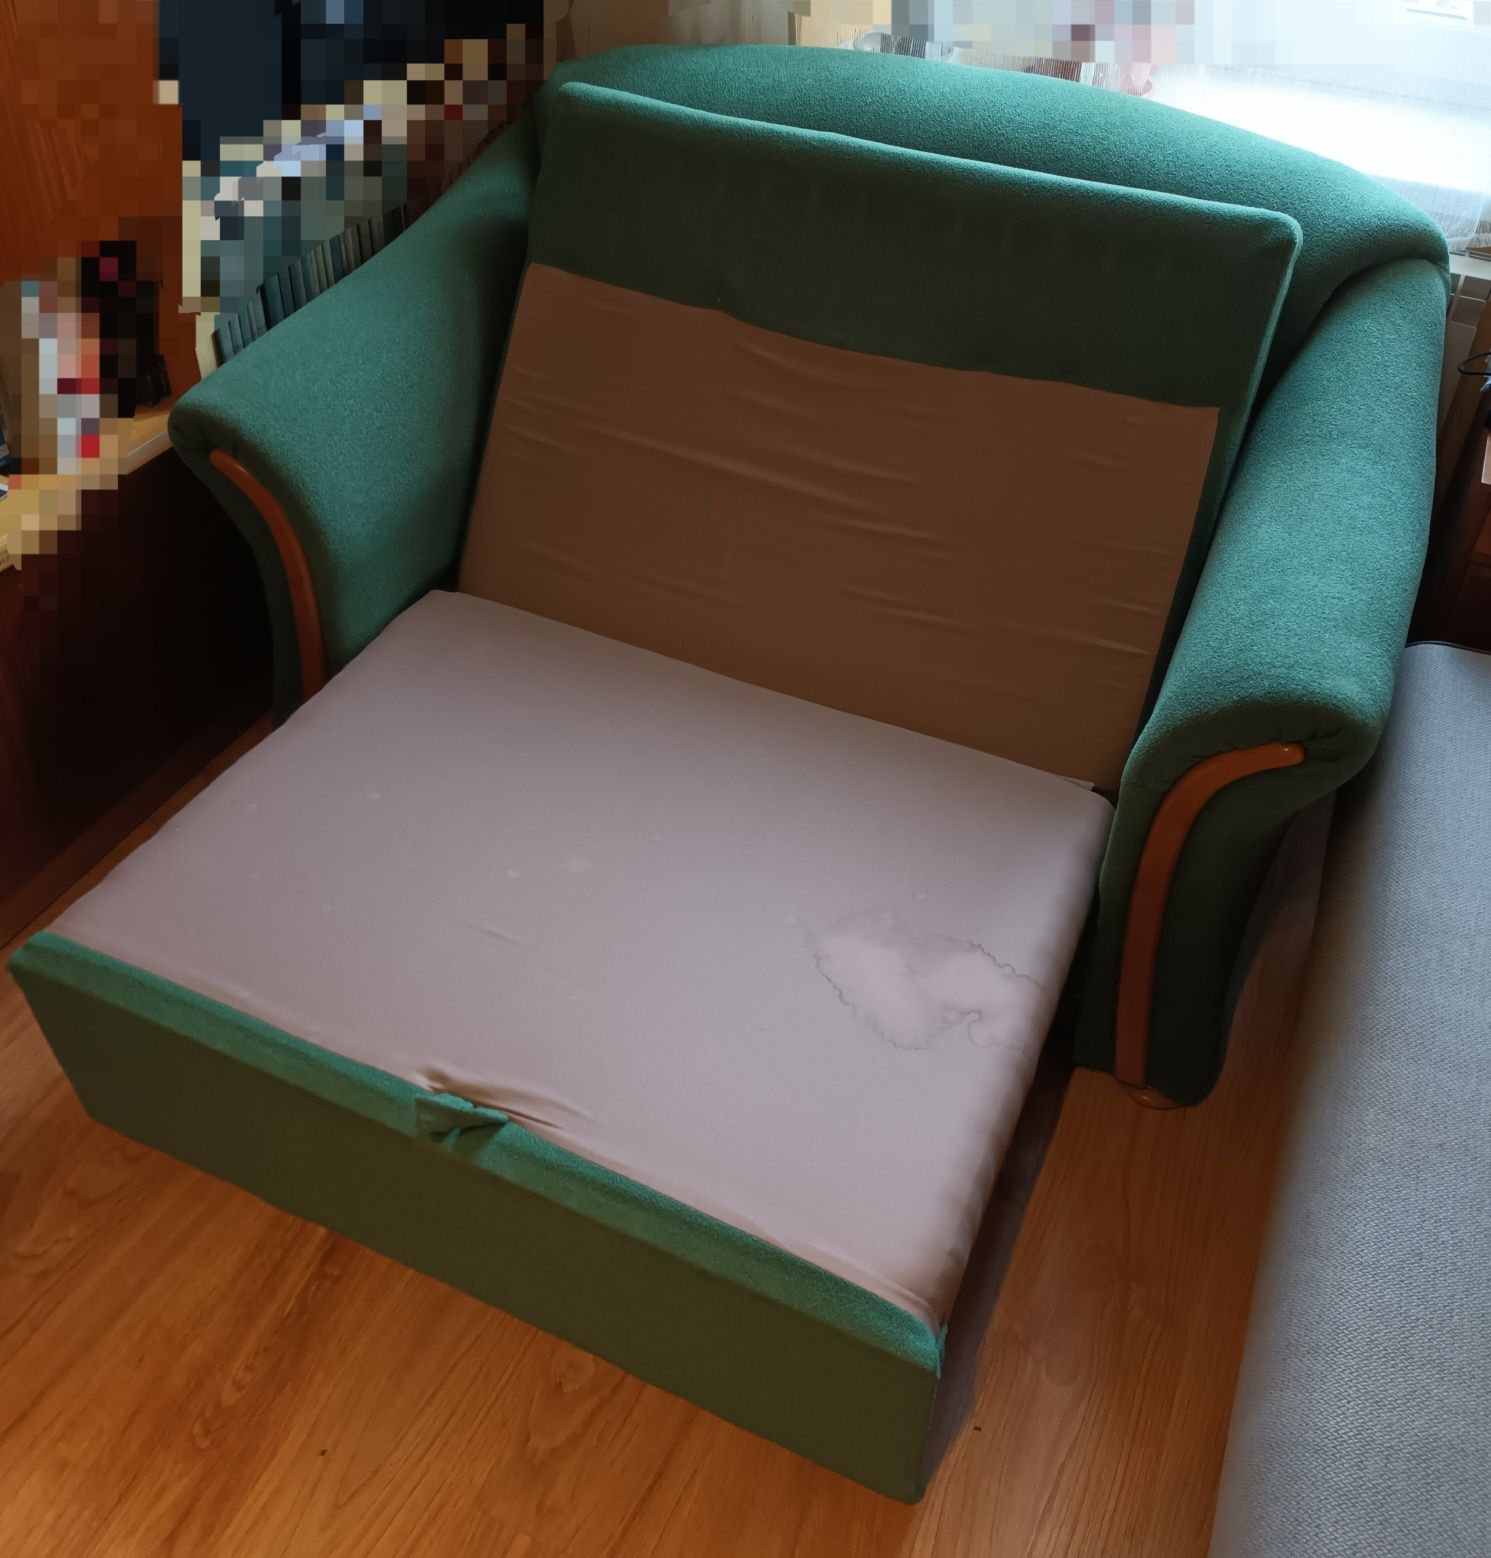 Sofa zgrabna, rozkładana, mała, z możliwością spania